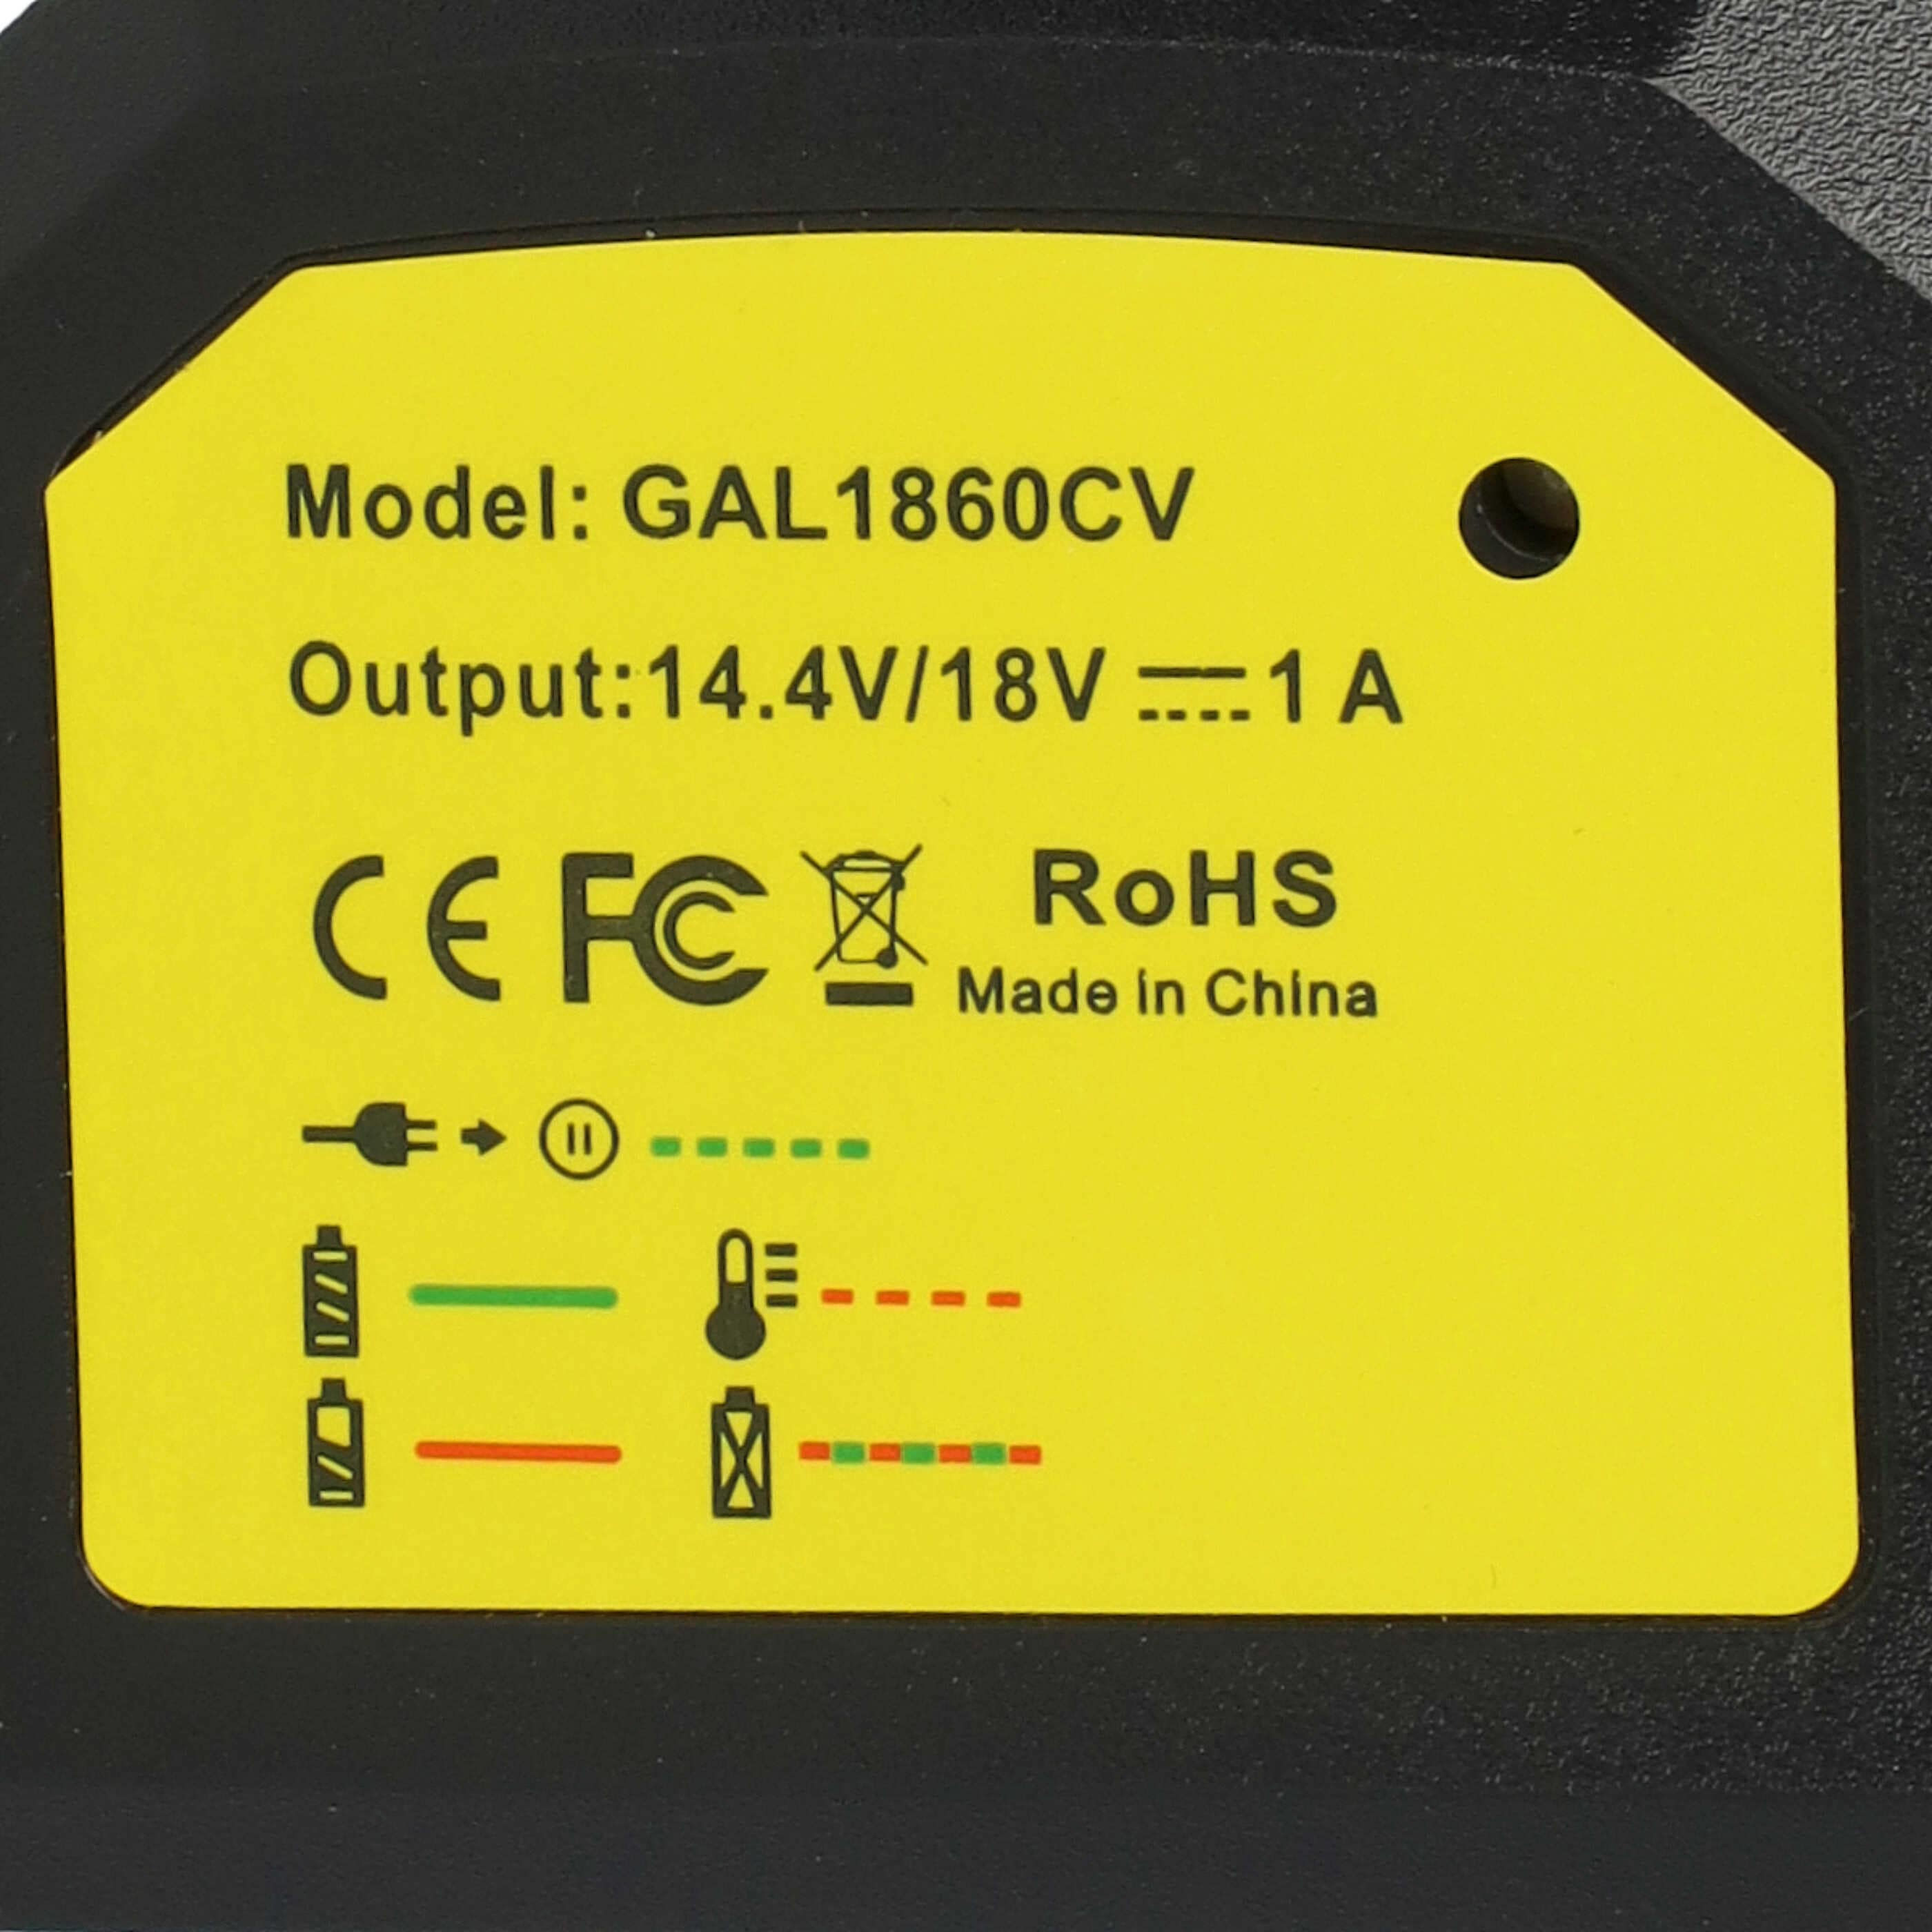 Chargeur pour batterie d'outil électrique Bosch, GDR 14.4 V-LI